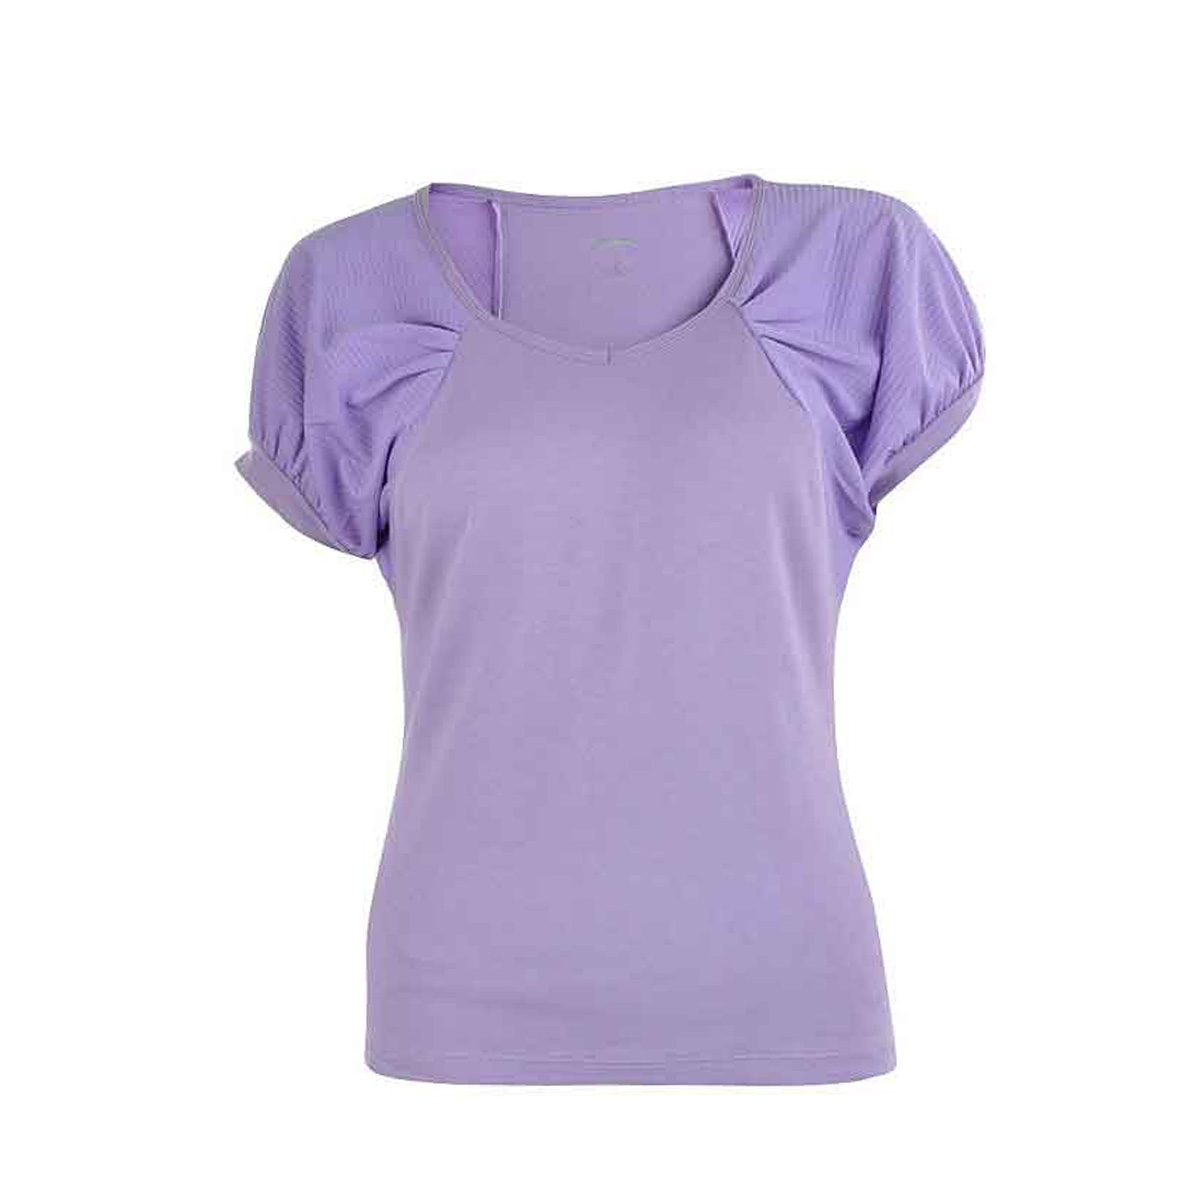 Женская футболка LI-NING ATSH082-1 (размеры: L, XL). 